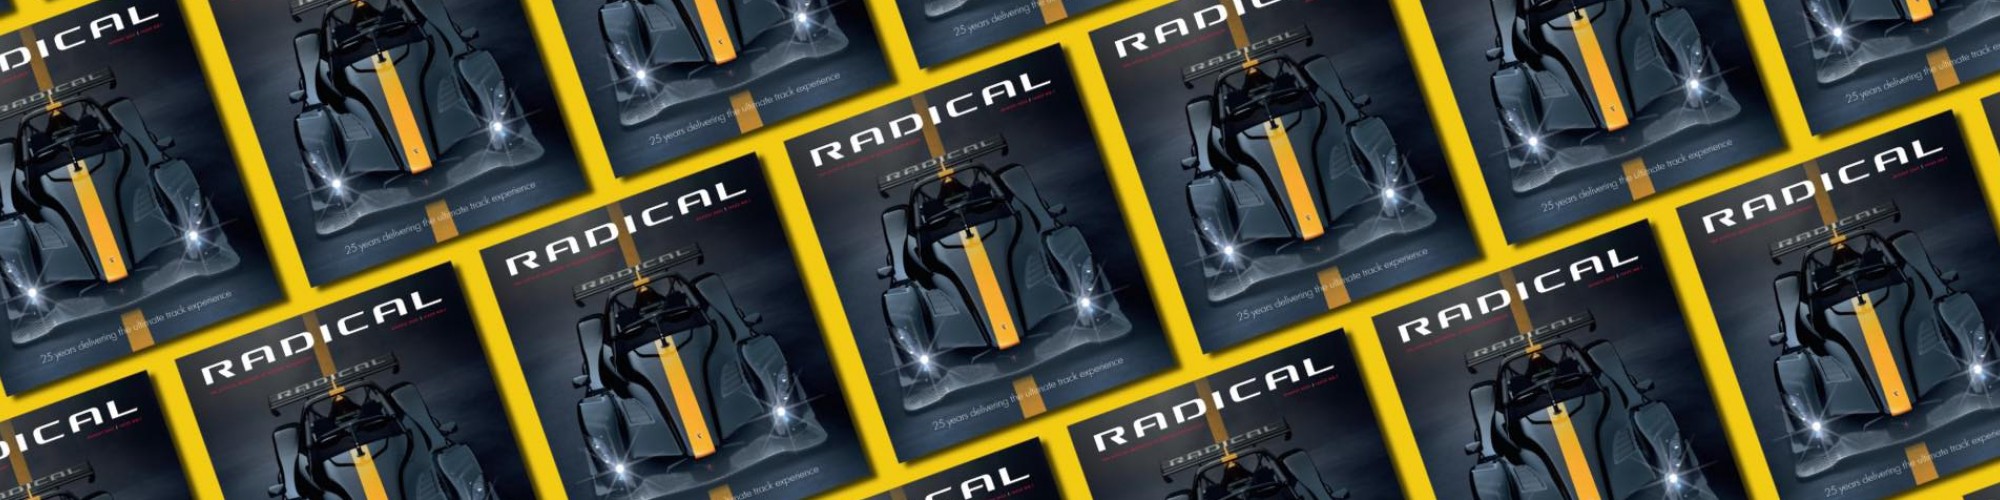 Radical Motorsport Ltd cover image